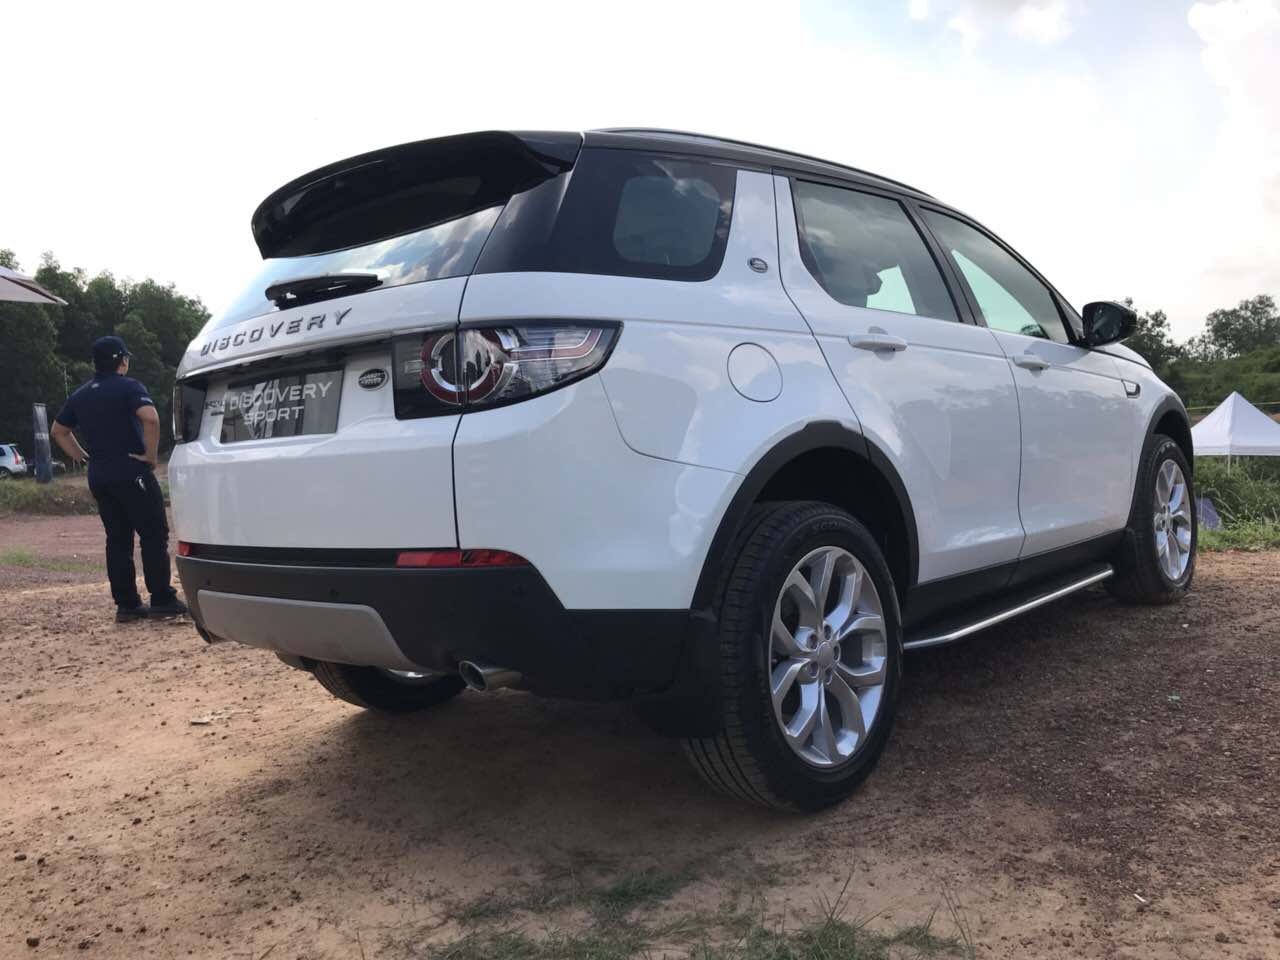 Giá Xe 5 Chỗ Land Rover Discovery SPort Màu Trắng 7 chỗ đời mới nhất 2019 Bao Nhiêu Tại Việt Nam, mẫu xe 2.0 máy xăng phiên bản tiêu chuẩn se, hse, hse luxury khác gì nhau